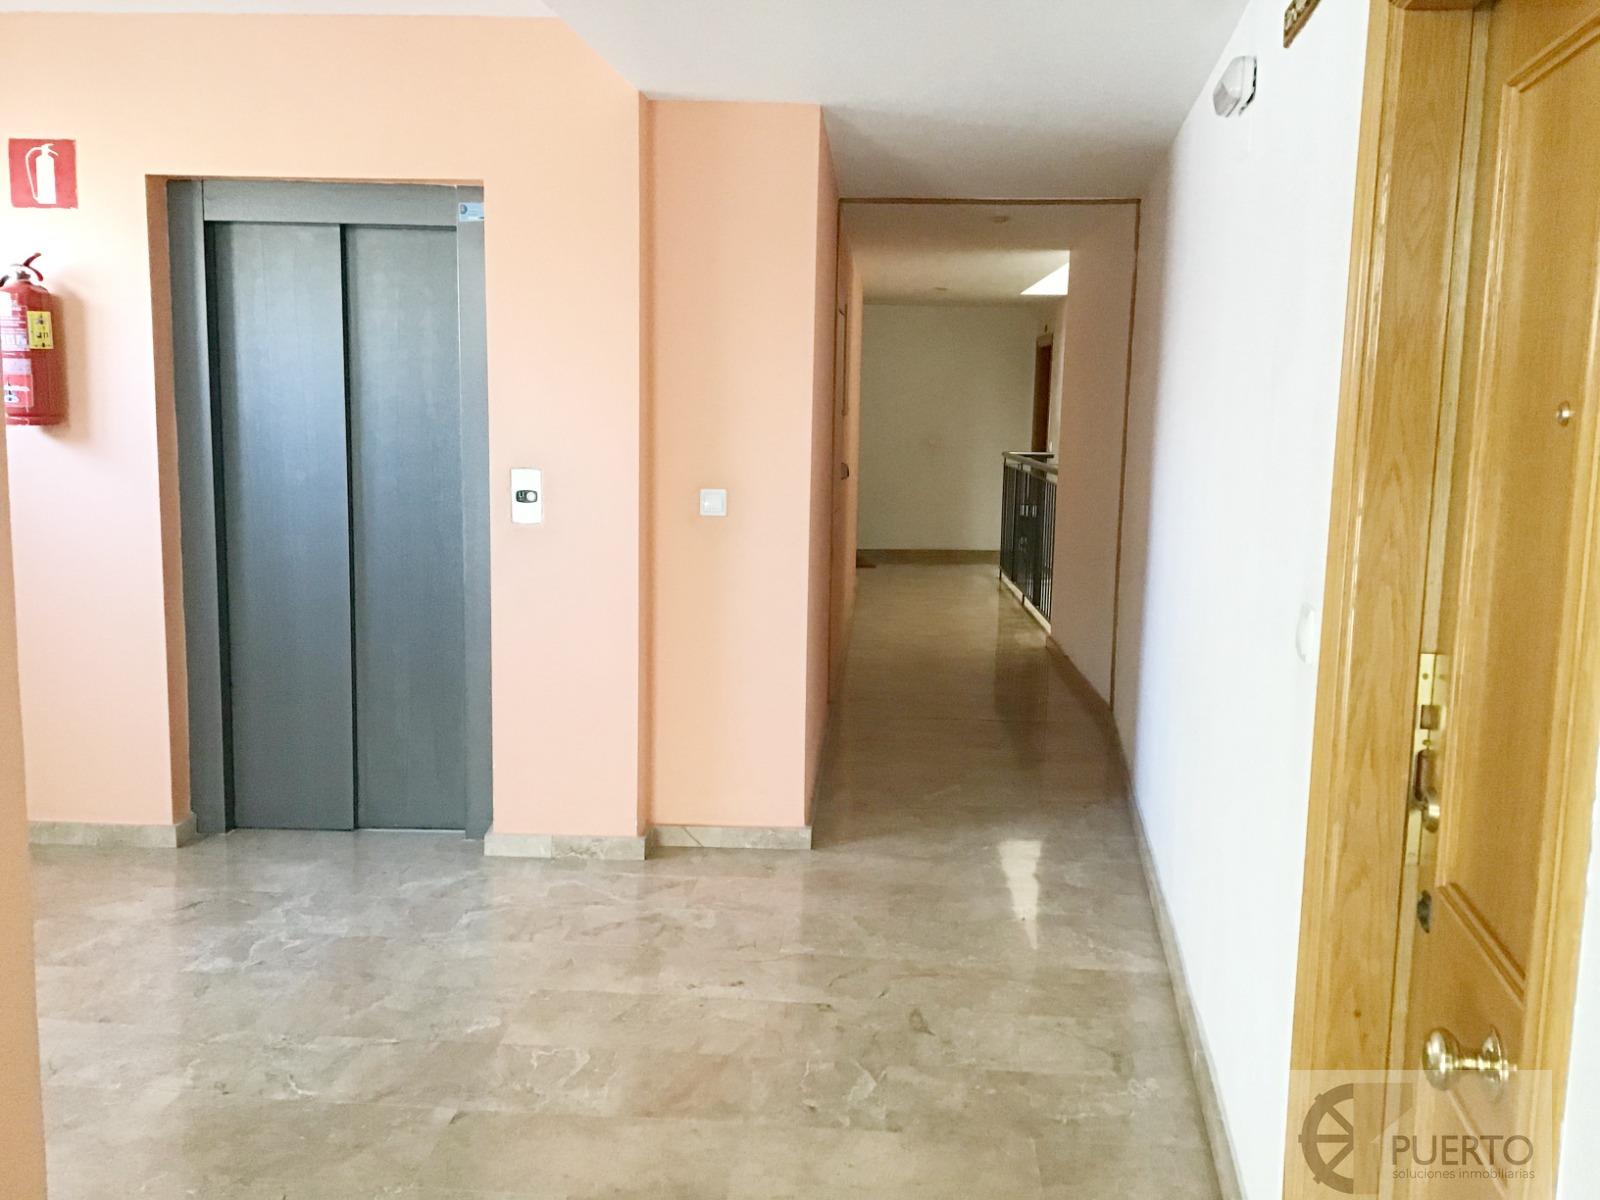 Vente de appartement dans Alcantarilla